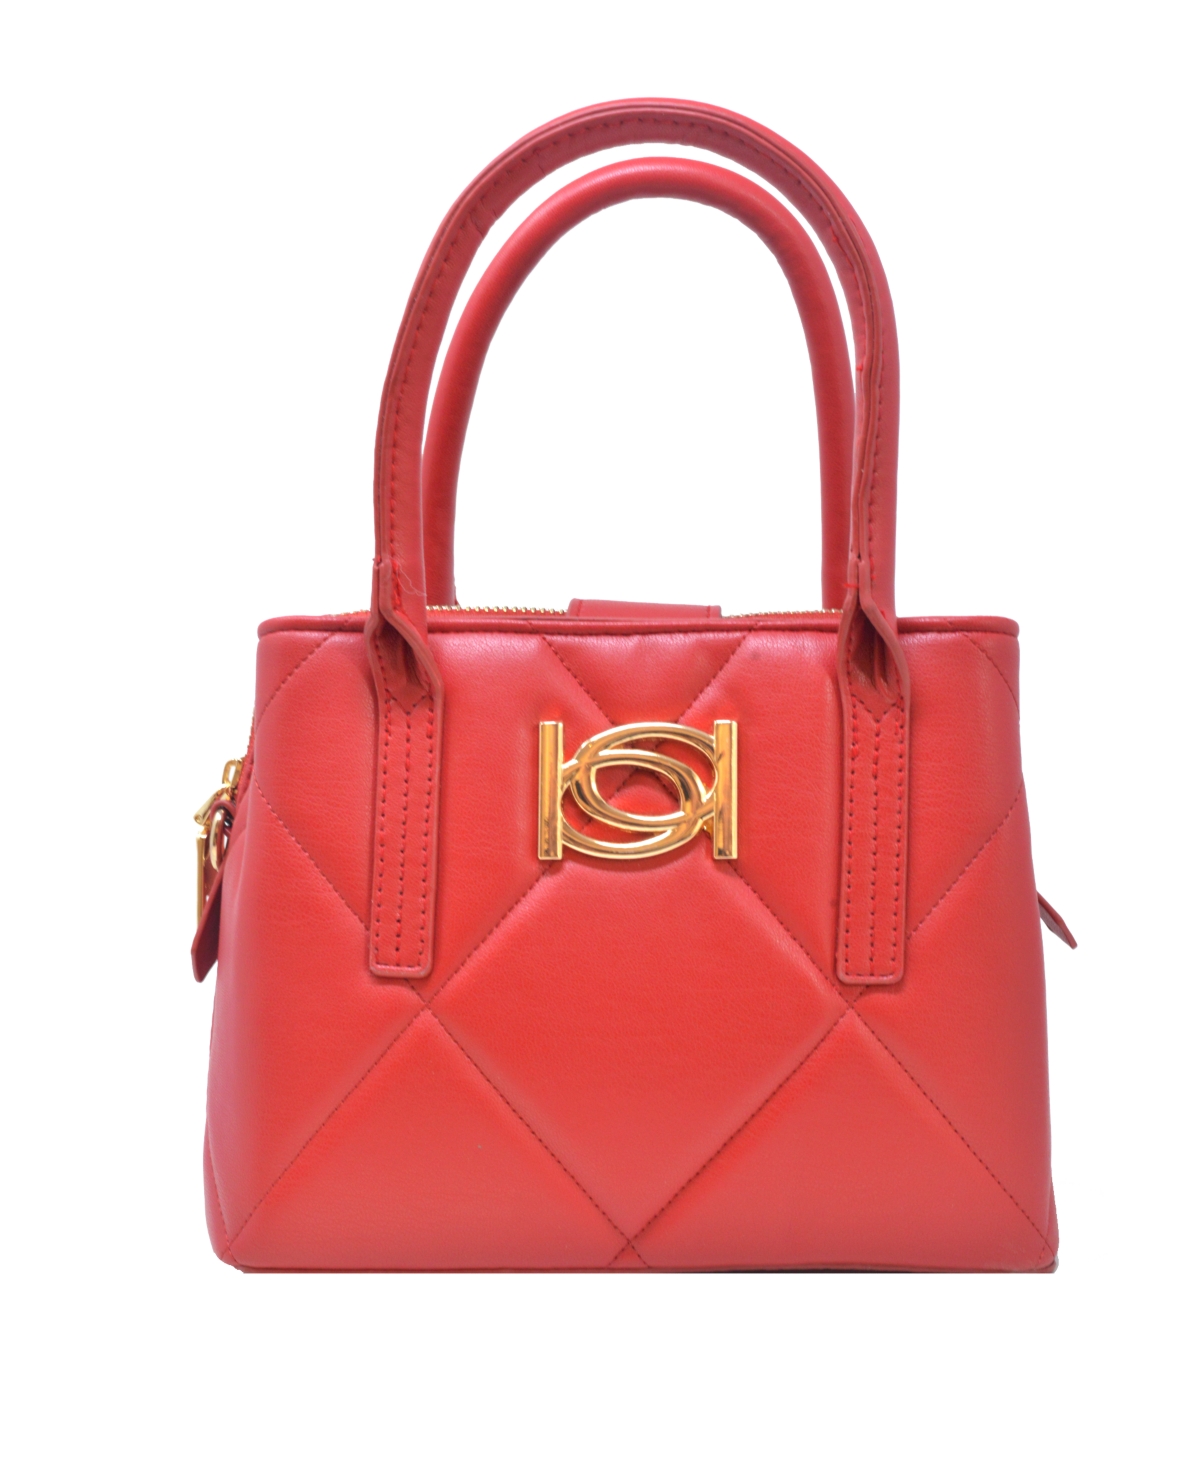 Bebe Women's Gio Satchel Bag In Red